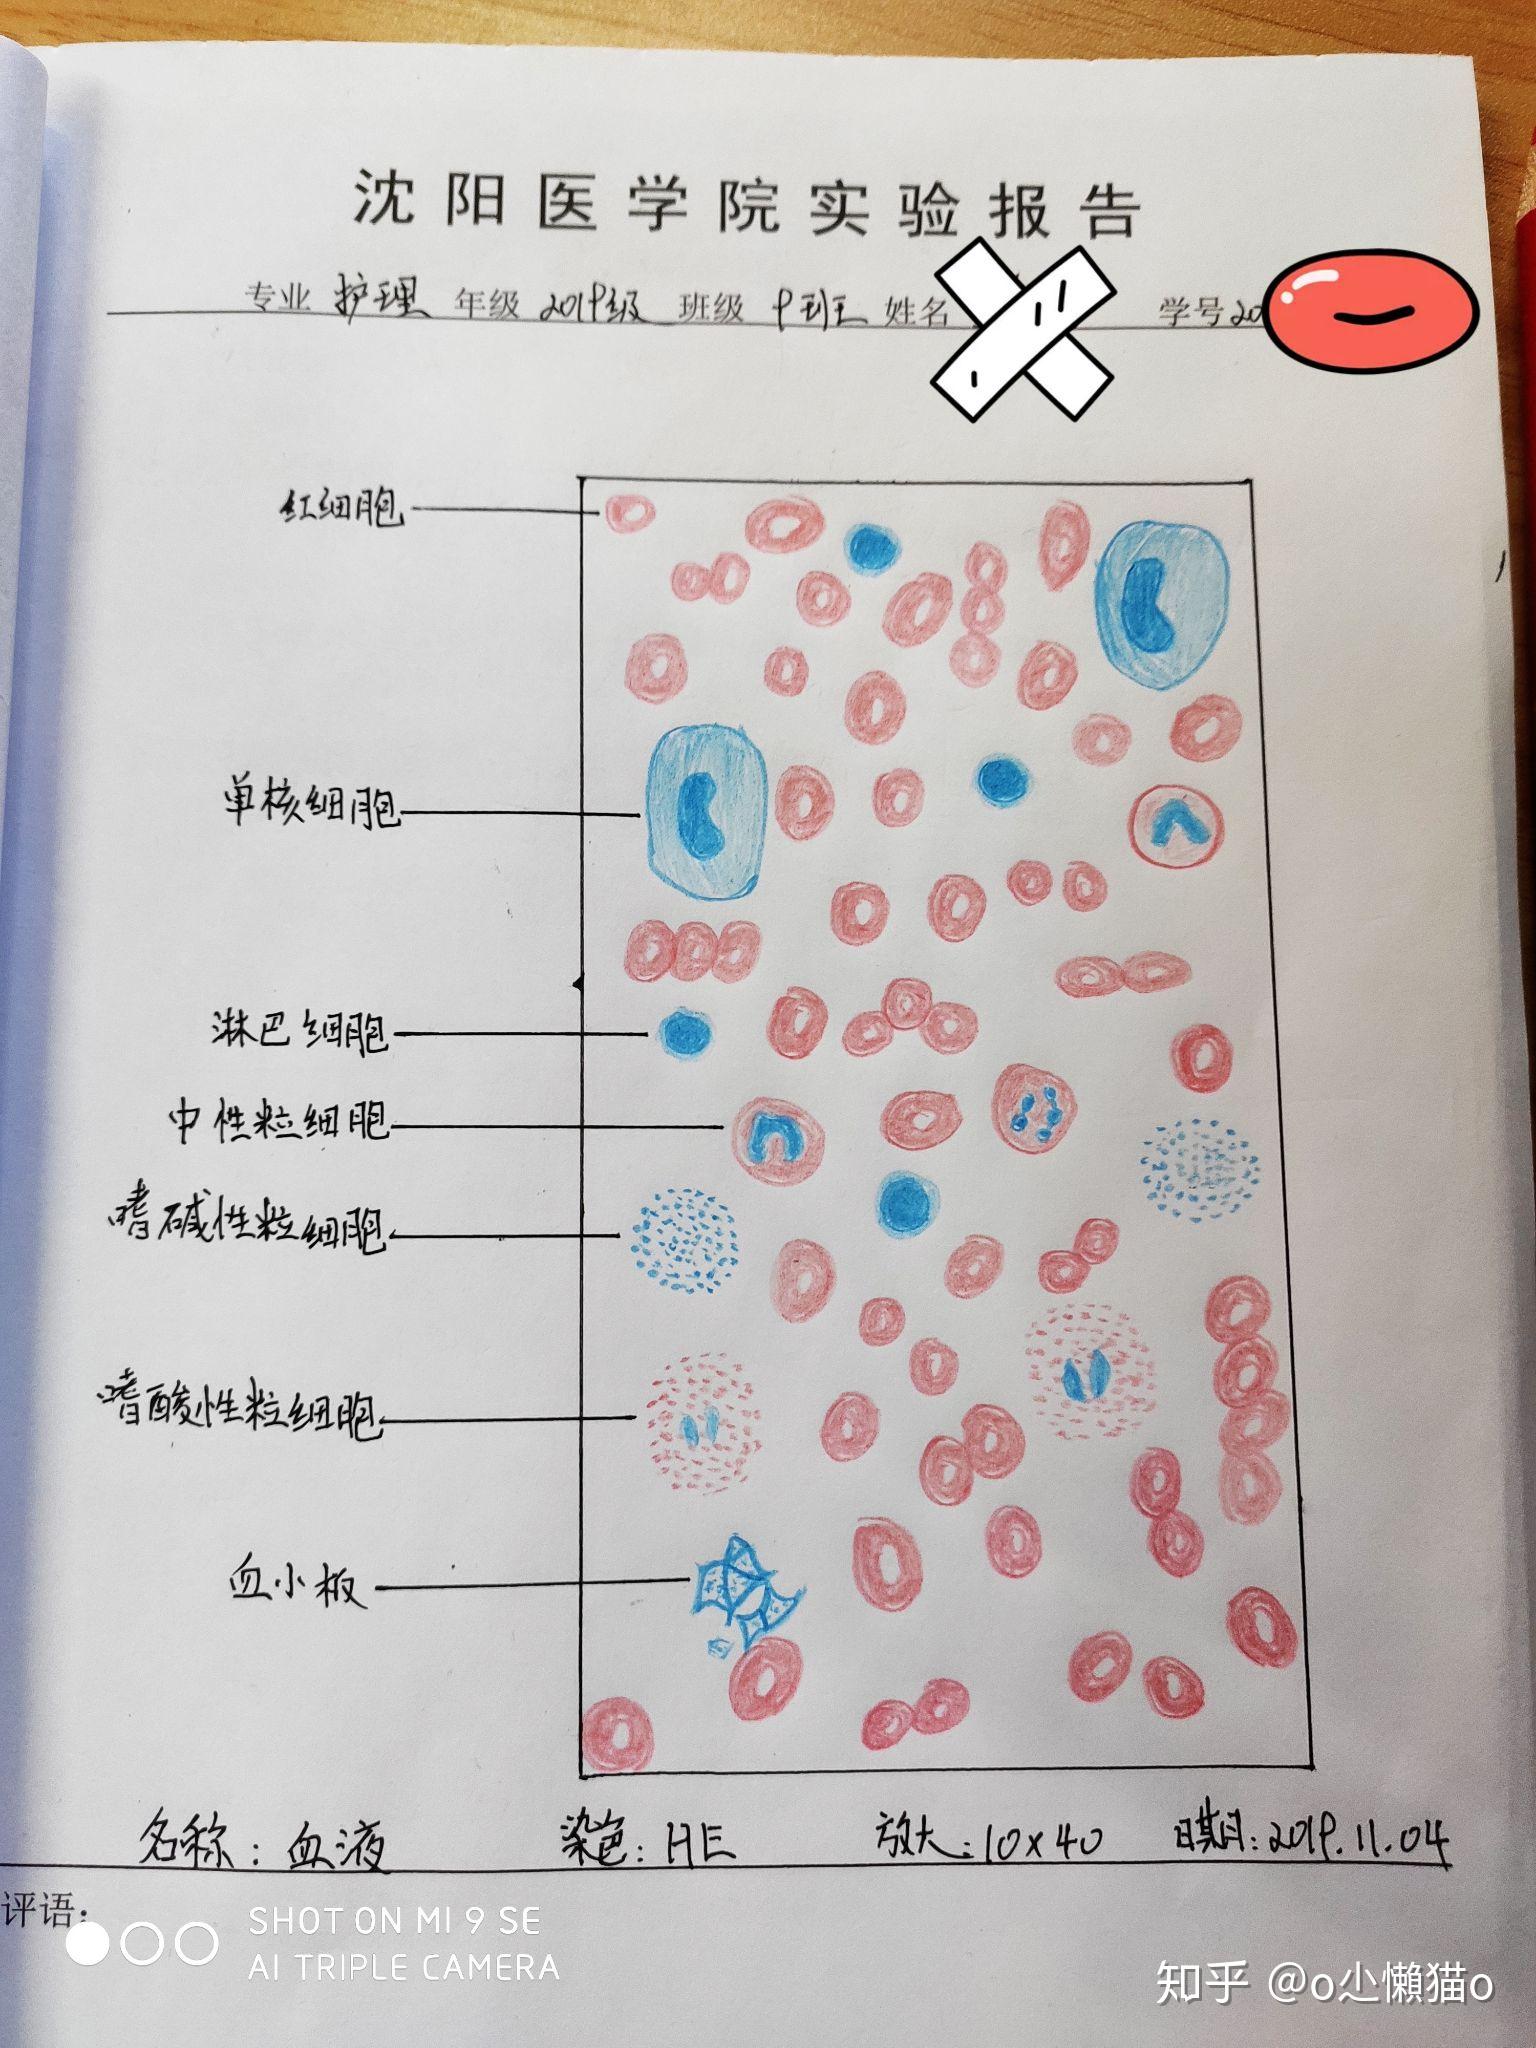 血细胞图片 手绘图图片